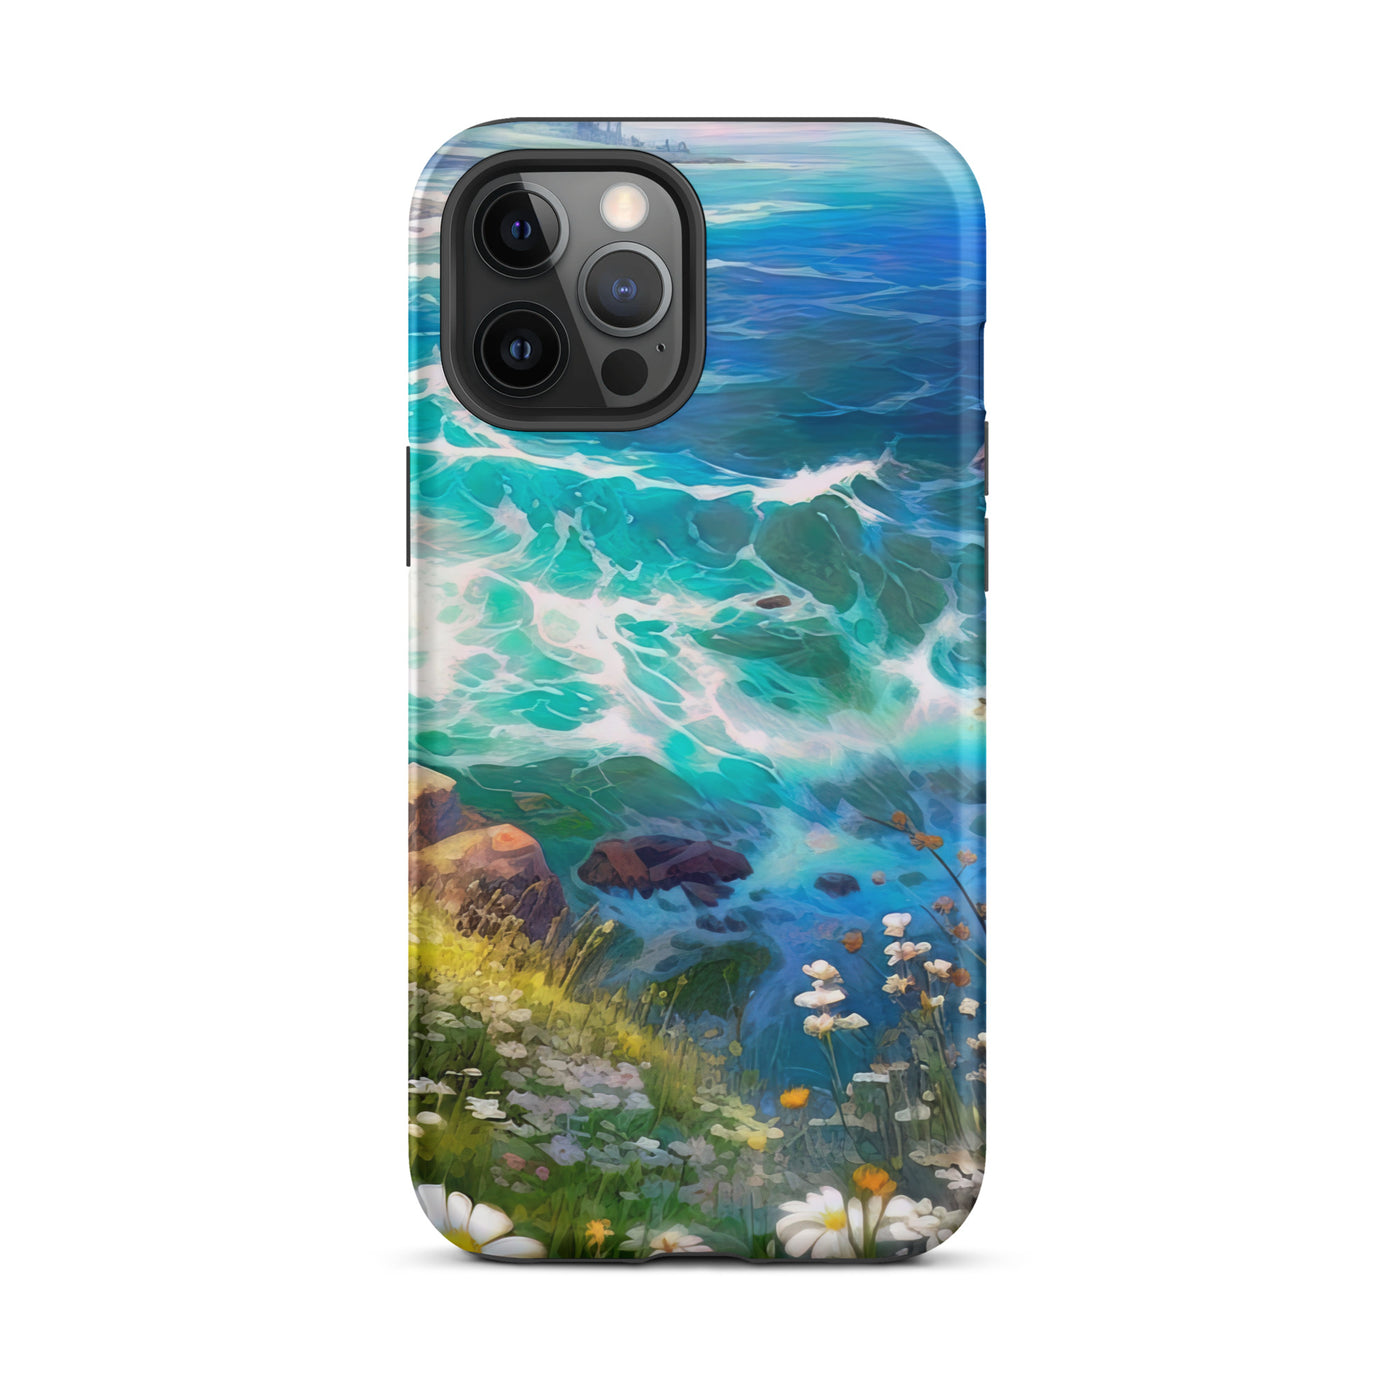 Berge, Blumen, Fluss und Steine - Malerei - iPhone Schutzhülle (robust) camping xxx iPhone 12 Pro Max